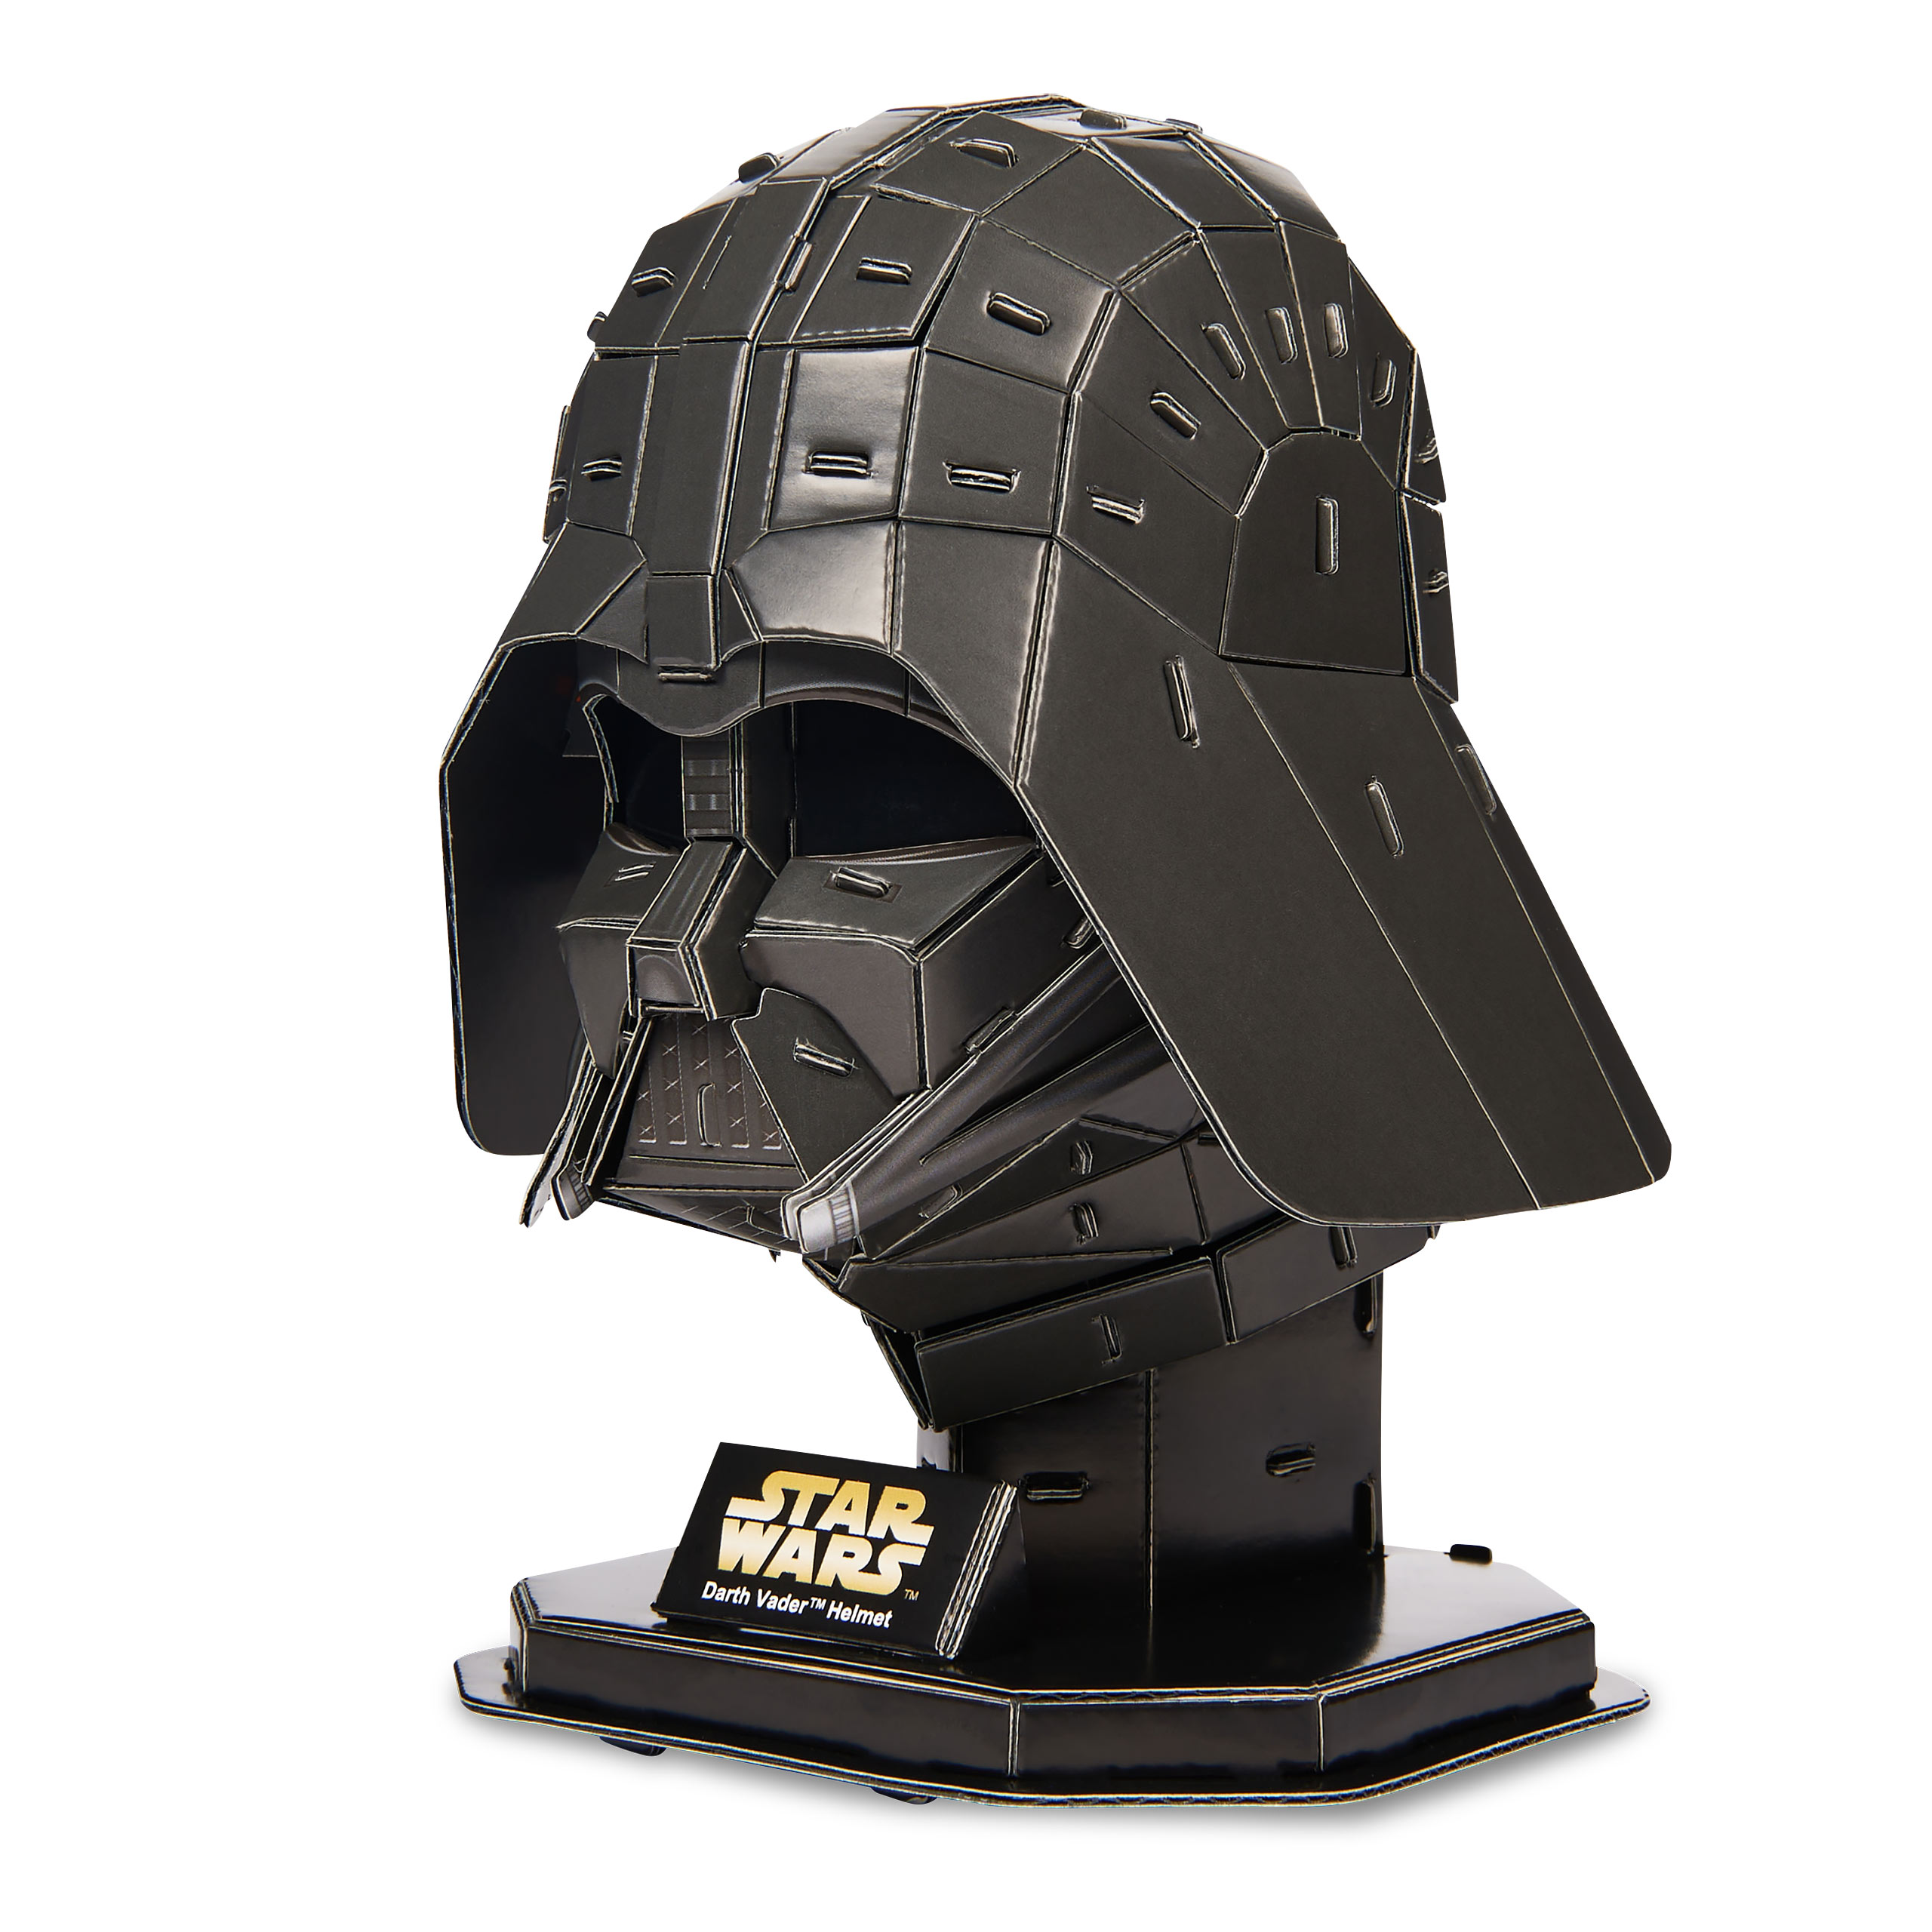 Darth Vader Helm 4D Build Modell Bausatz - Star Wars